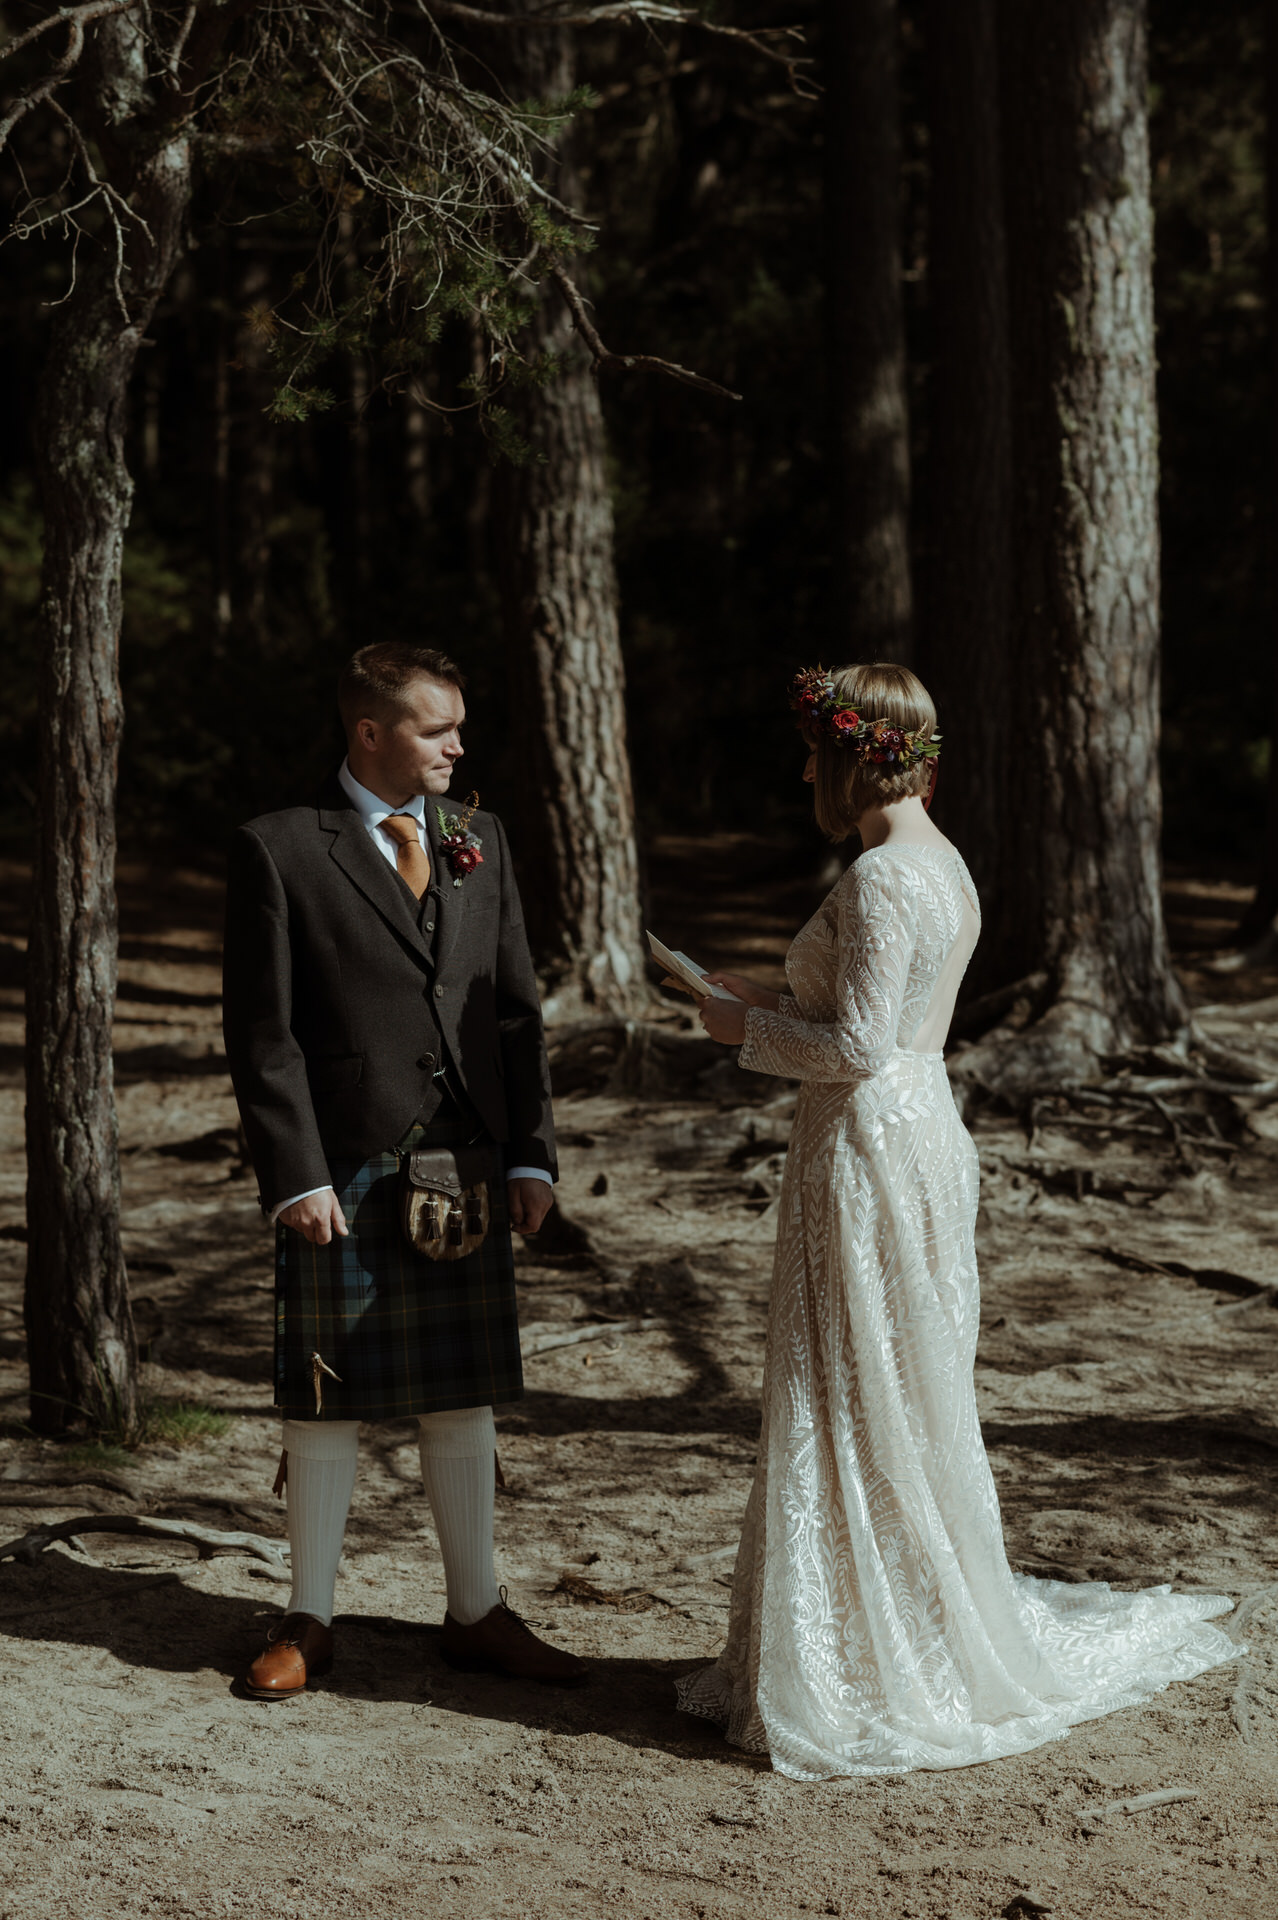 Bride saying her vows during ceremony wedding at Loch Garten.